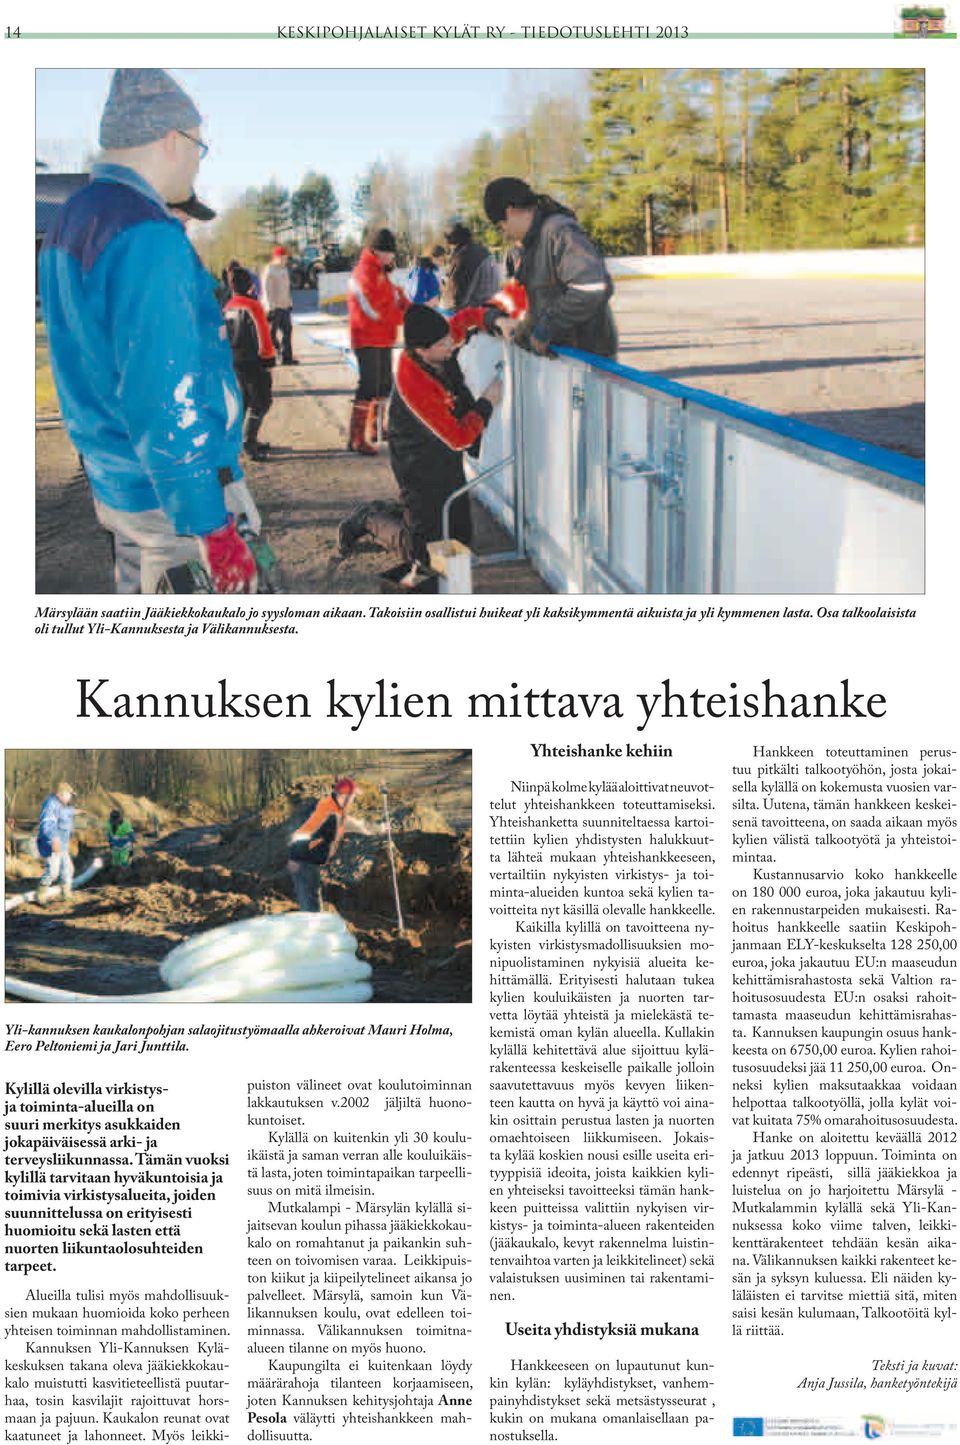 Kannuksen kylien mittava yhteishanke Yli-kannuksen kaukalonpohjan salaojitustyömaalla ahkeroivat Mauri Holma, Eero Peltoniemi ja Jari Junttila.